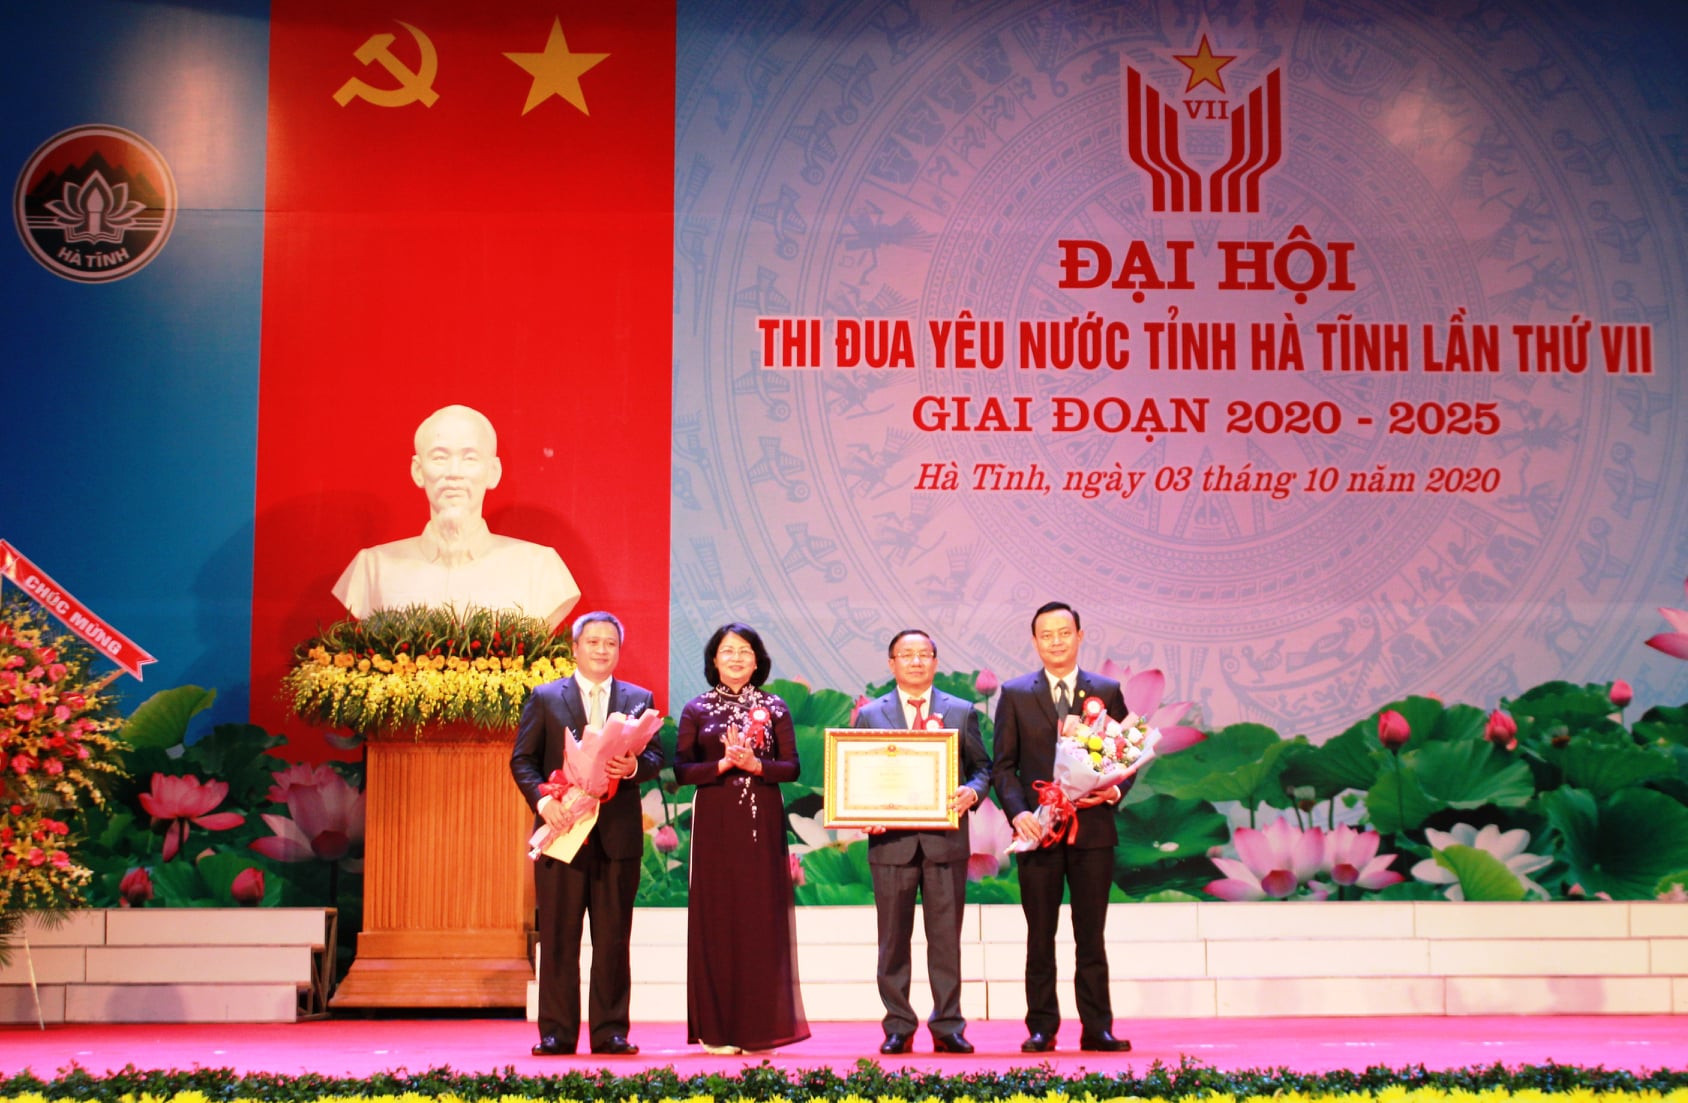 Đại diện cho Đảng bộ, chính quyền và Nhân dân tỉnh Hà Tĩnh nhận bằng khen của Thủ tướng Chính phủ do Phó Chủ tịch nước Đặng Ngọc Thịnh trao tặng.